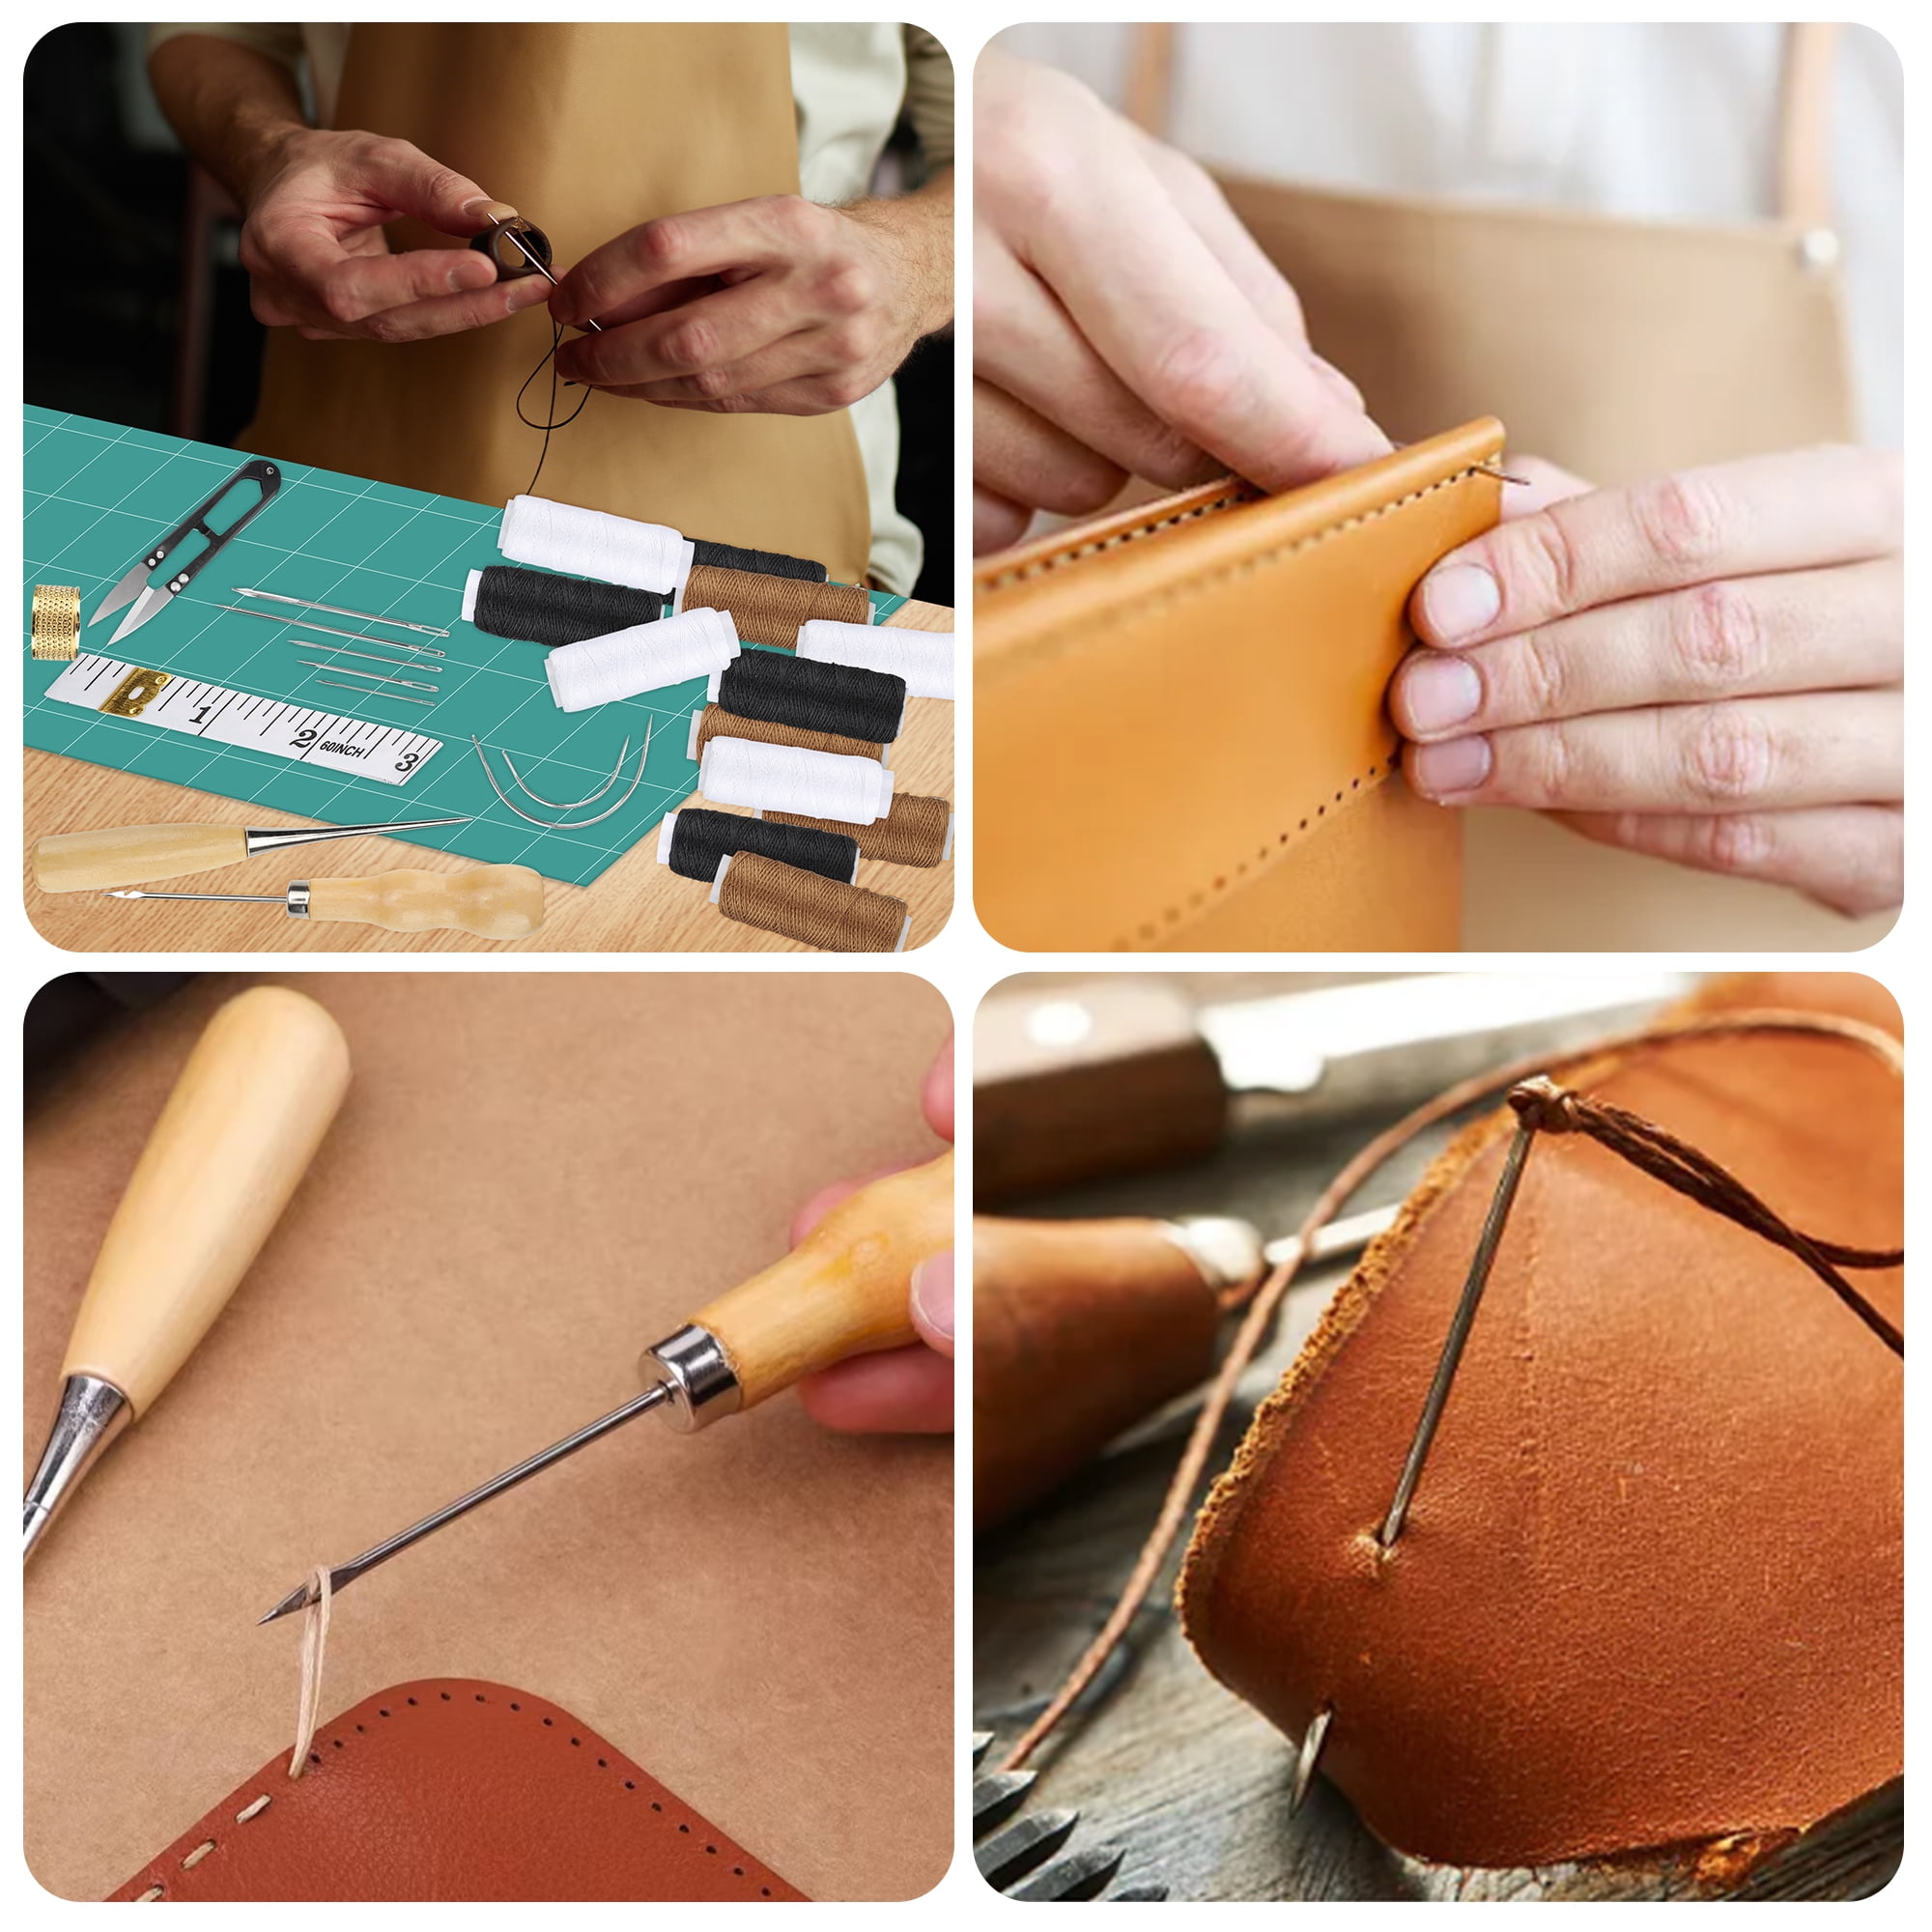  30 PCS Upholstery Repair Kit, Leather Sewing Repair